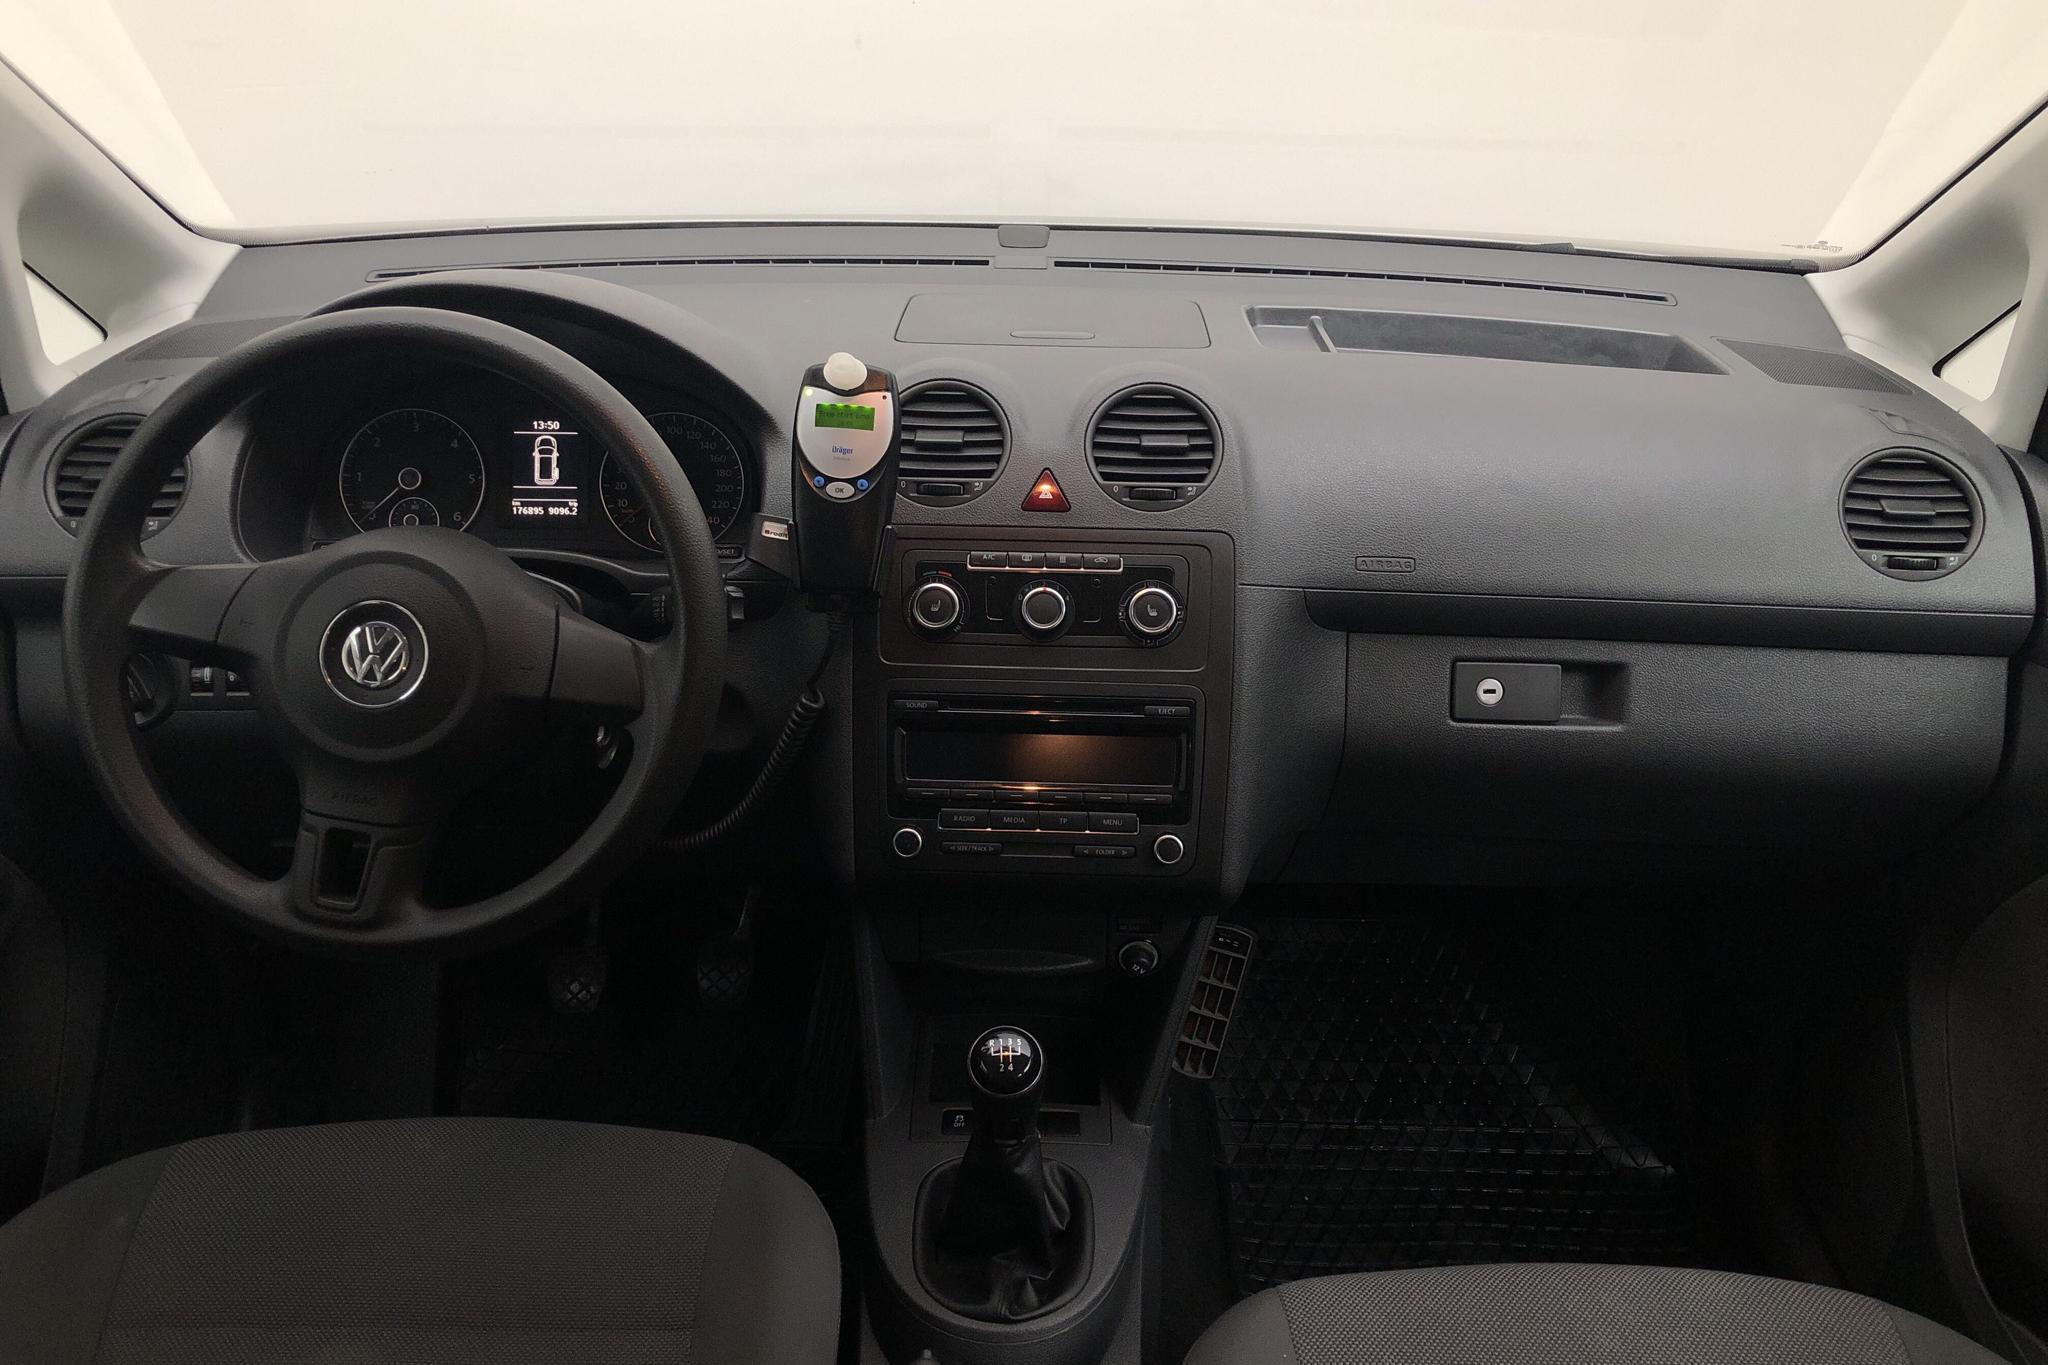 VW Caddy MPV 1.6 TDI (102hk) - 17 690 mil - Manuell - vit - 2013